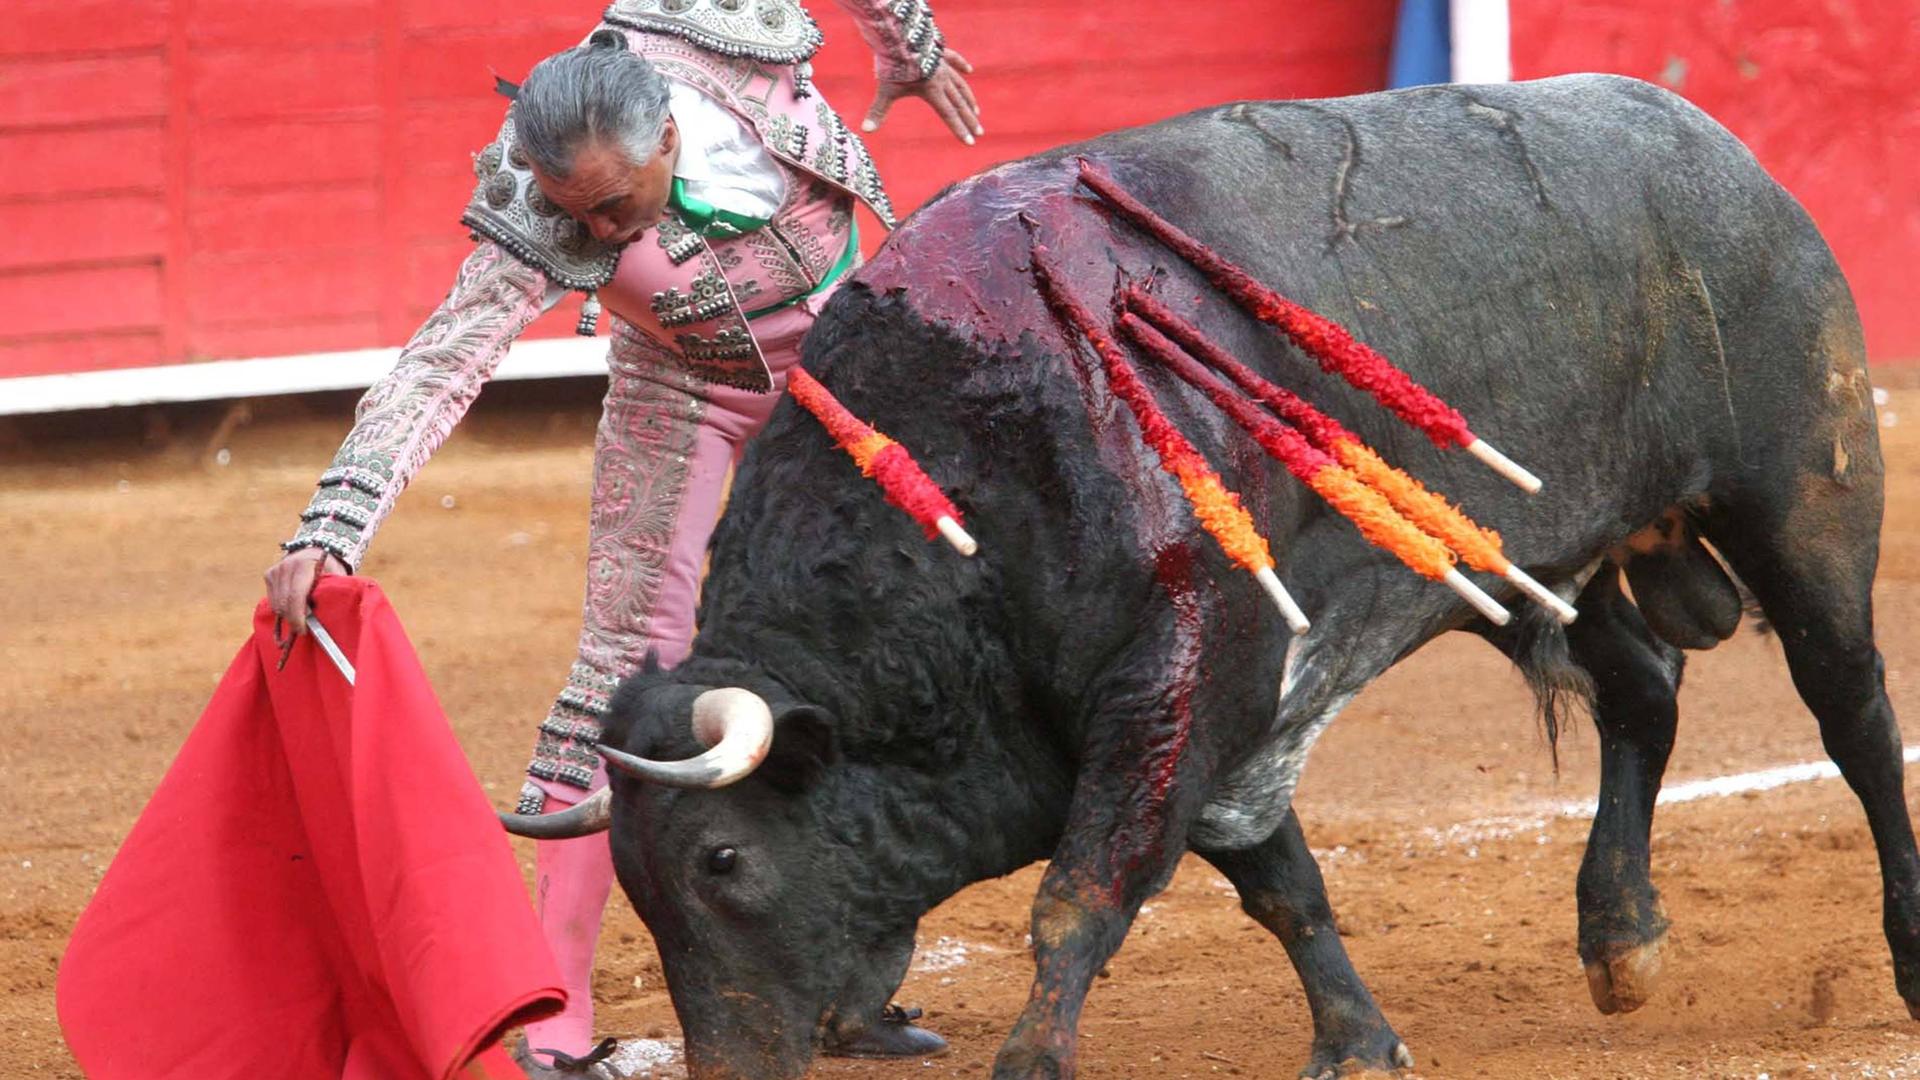 Ein mexikanischer Torero steht in einer Arena neben einem Stier, der aus mehreren Wunden stark blutet.